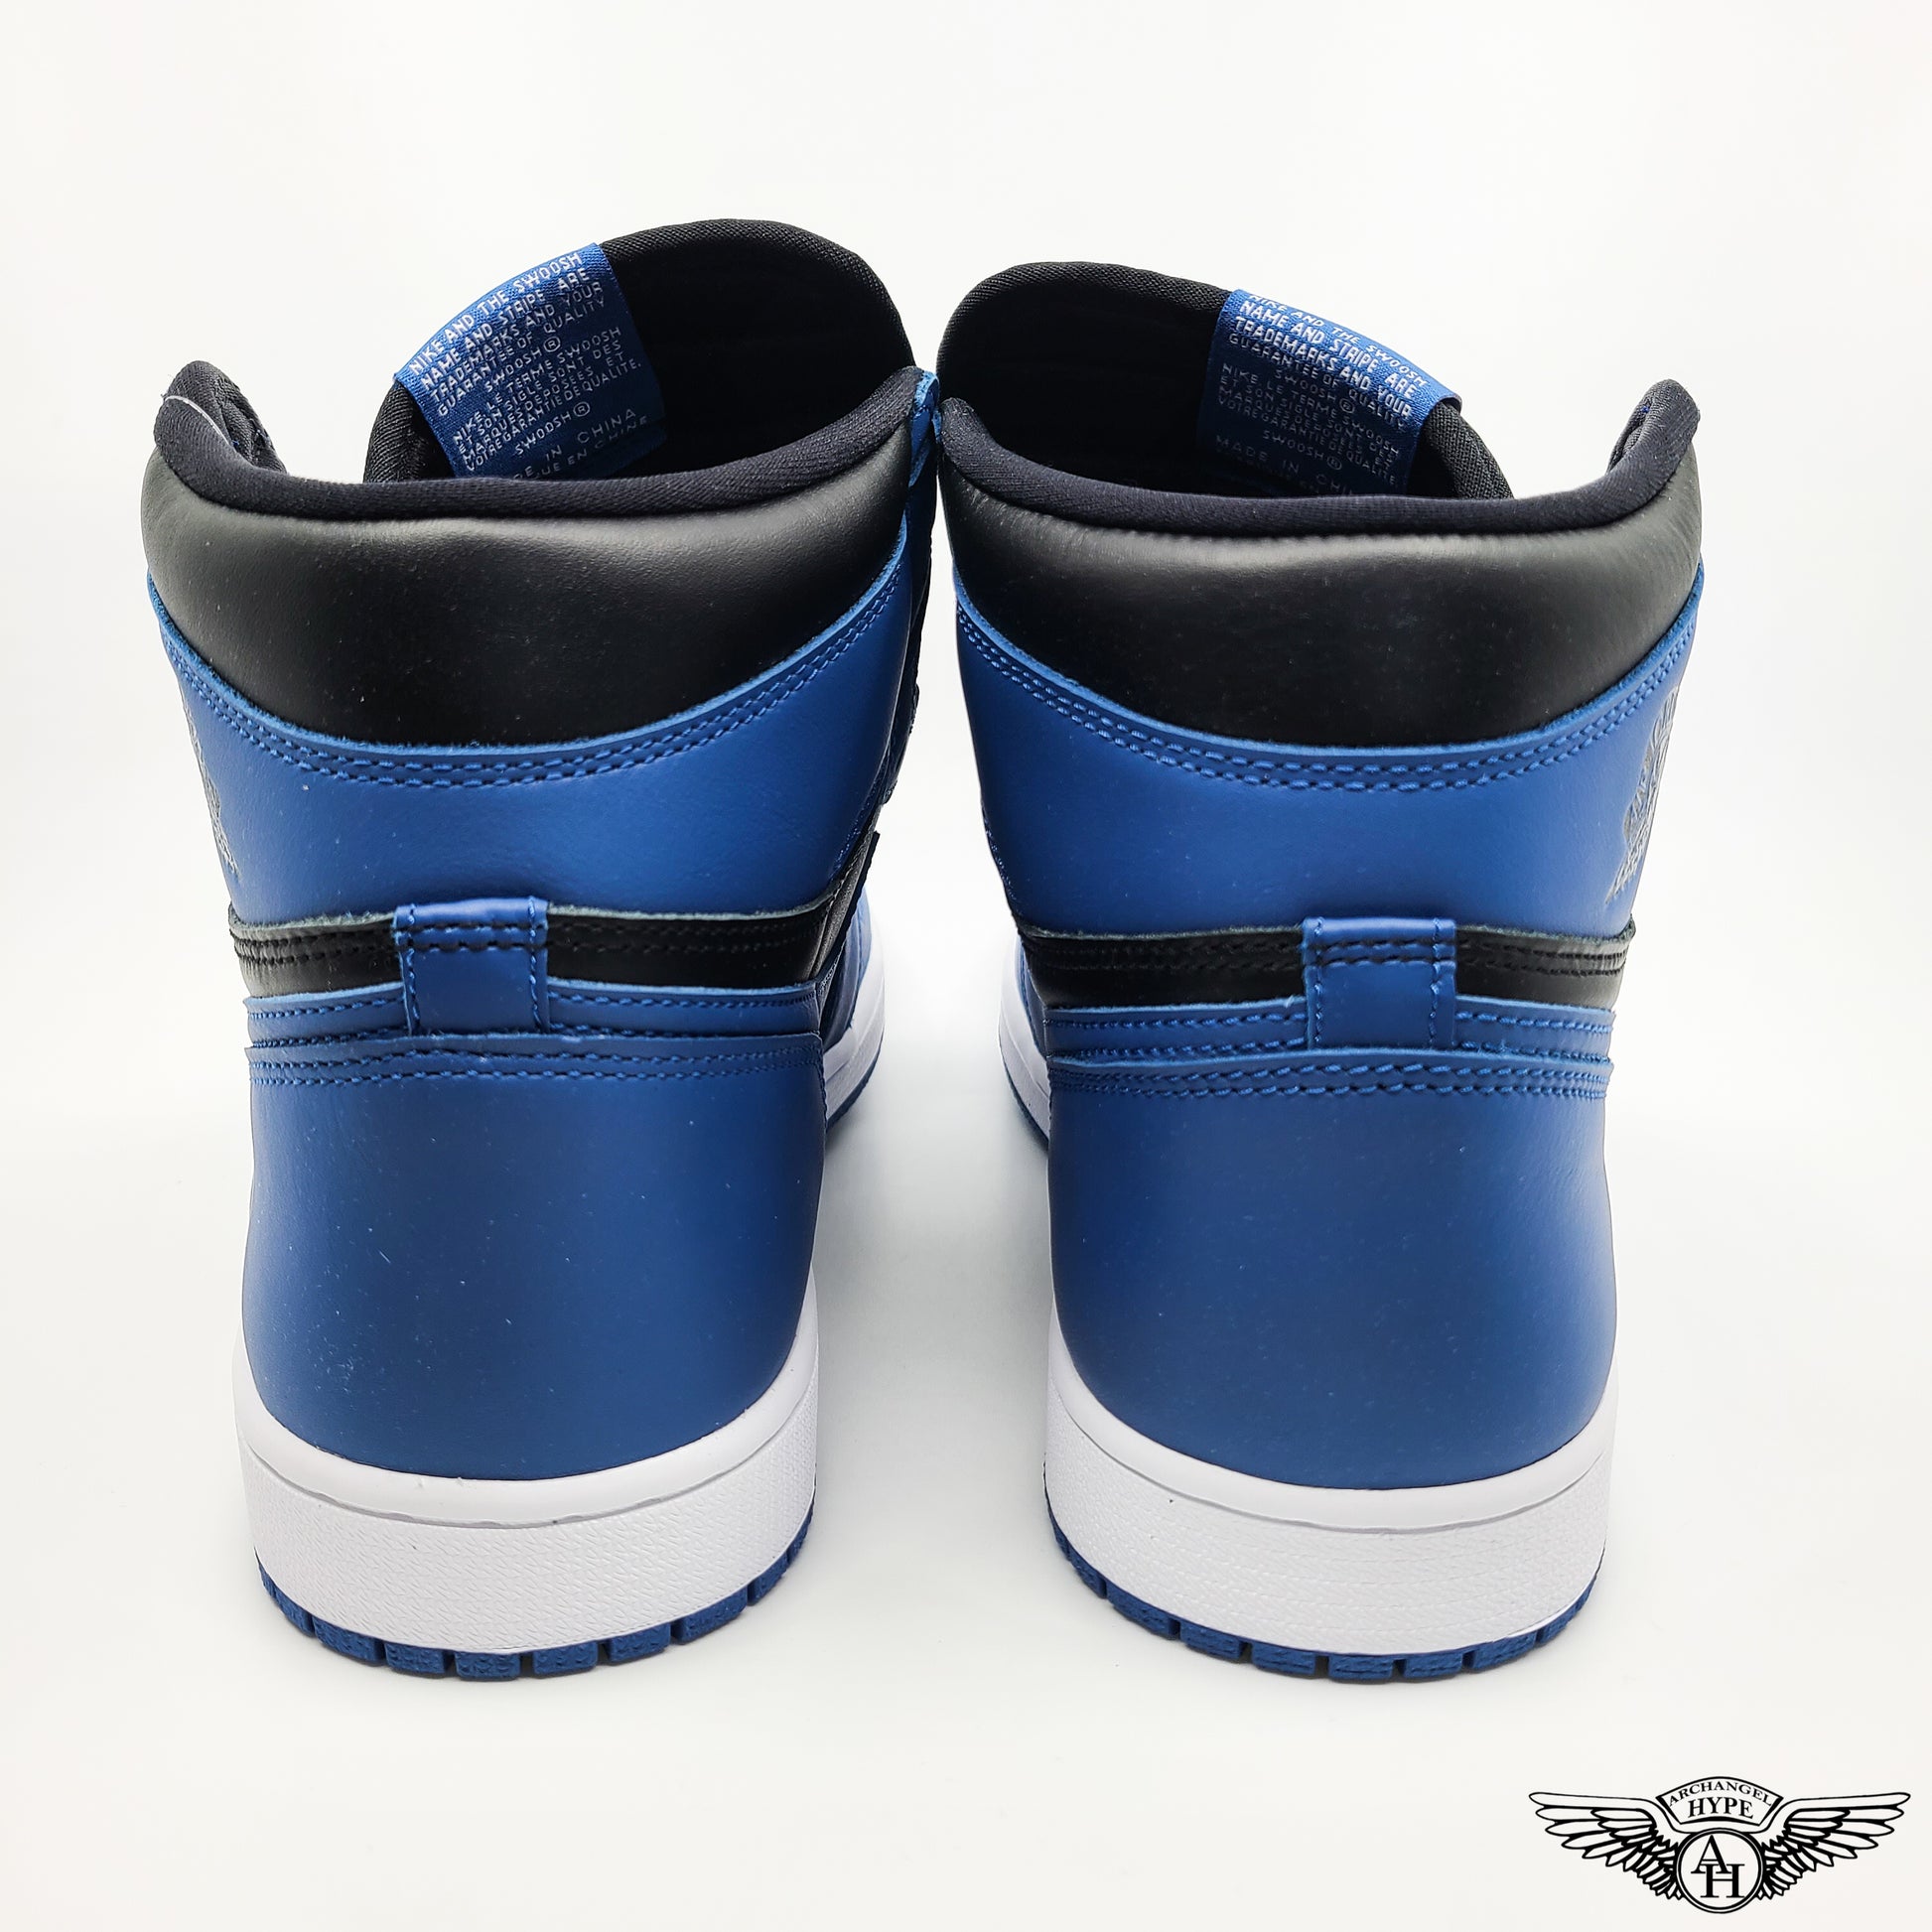 S1832 Nike Air Jordan 1 Retro High OG Dark Marina Blue 555088-404 (2).jpg